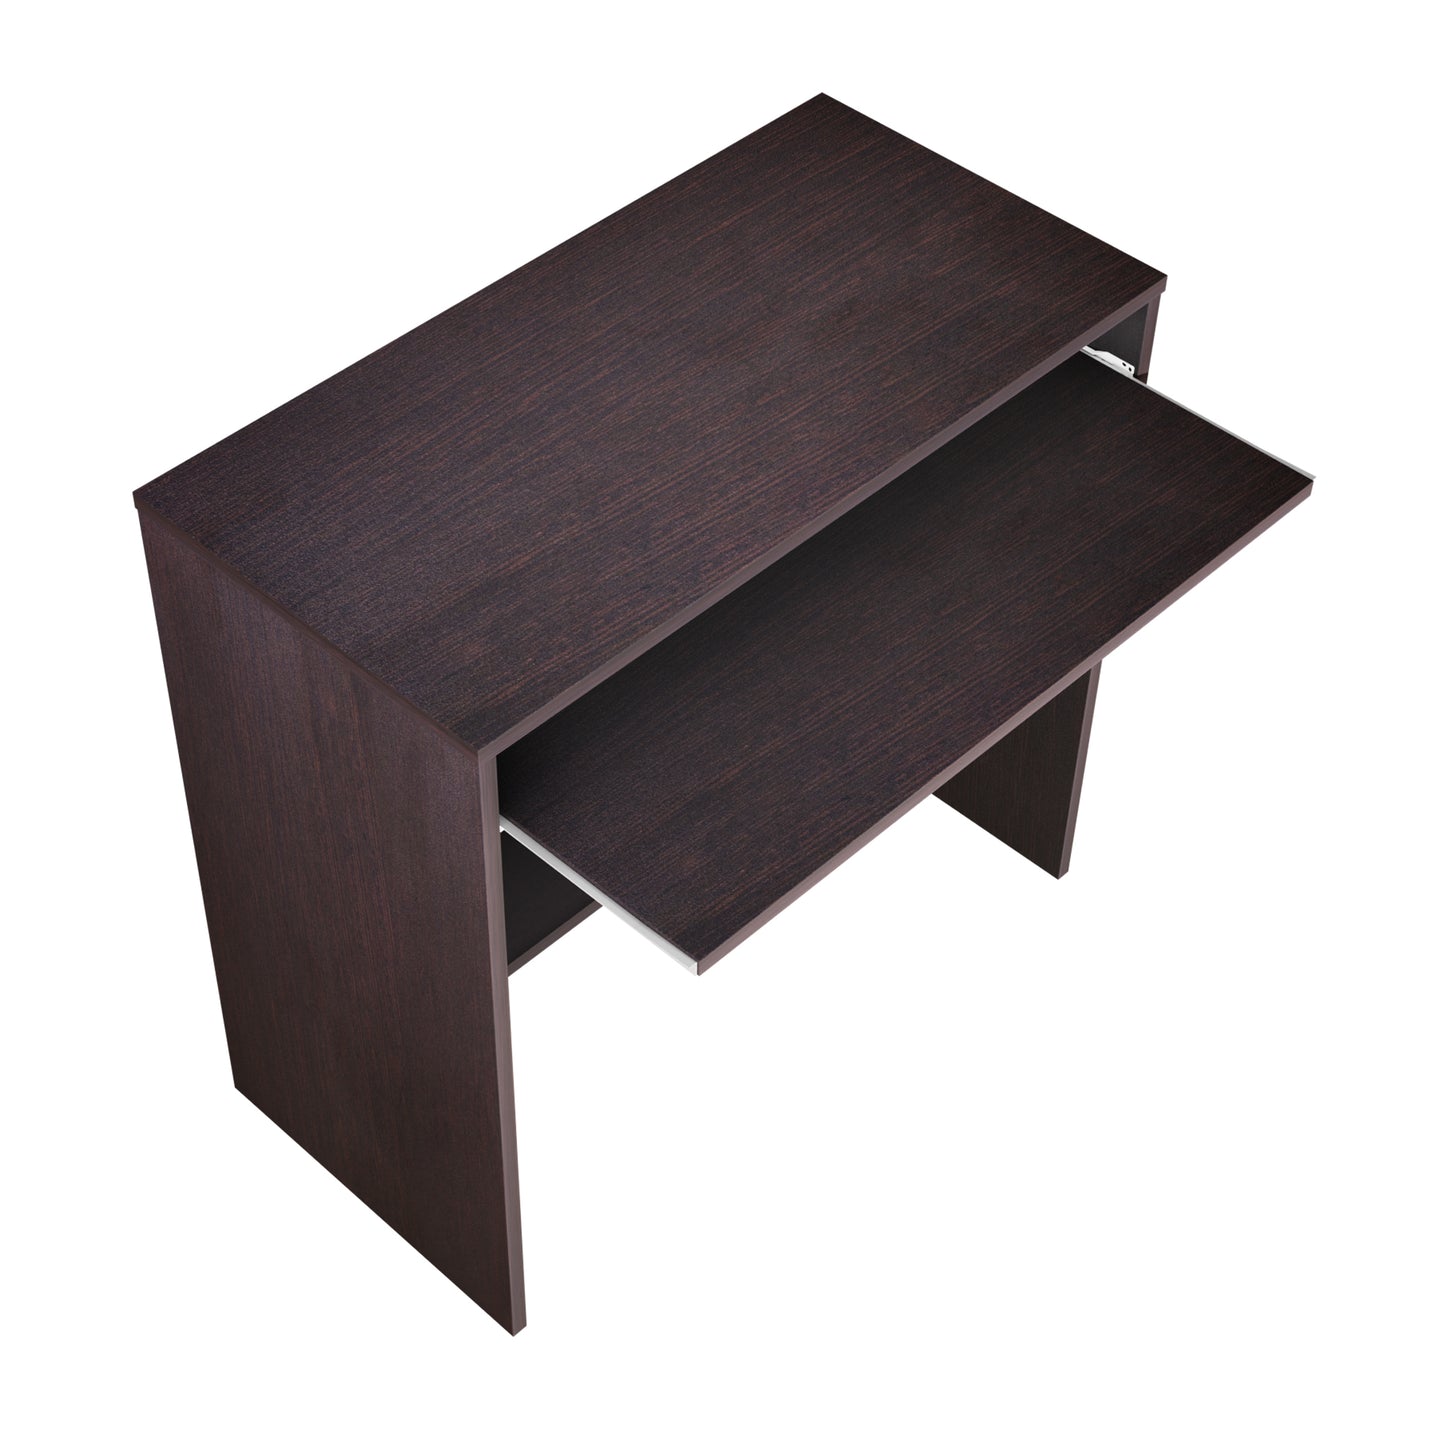 KAVINI | Desks & Tables Tables VIKI FURNITURE   